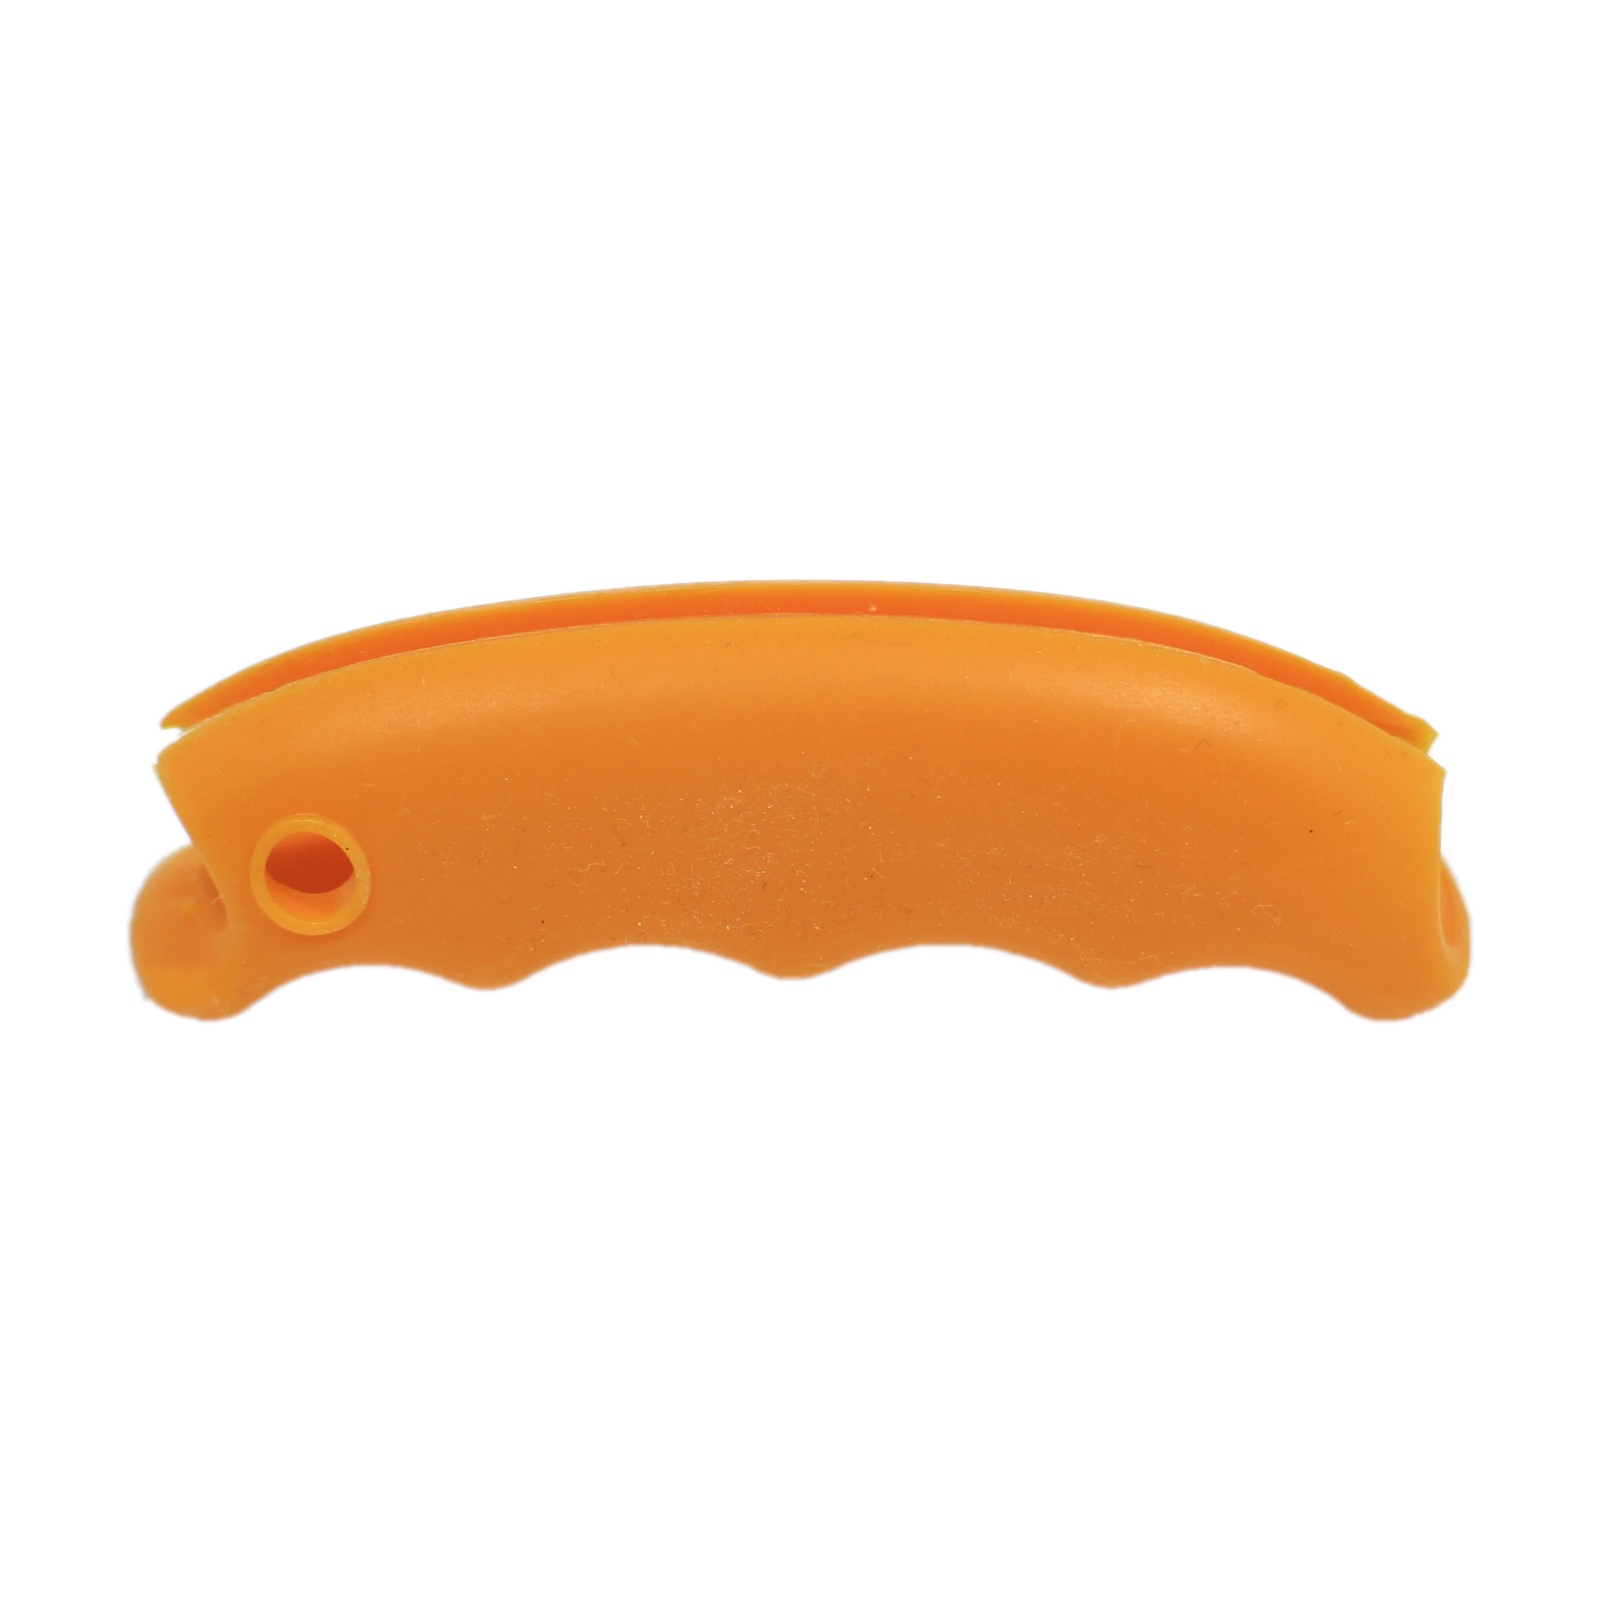 Держатель интерьерный Простые Предметы ручка для переноски пакетов, оранжевый